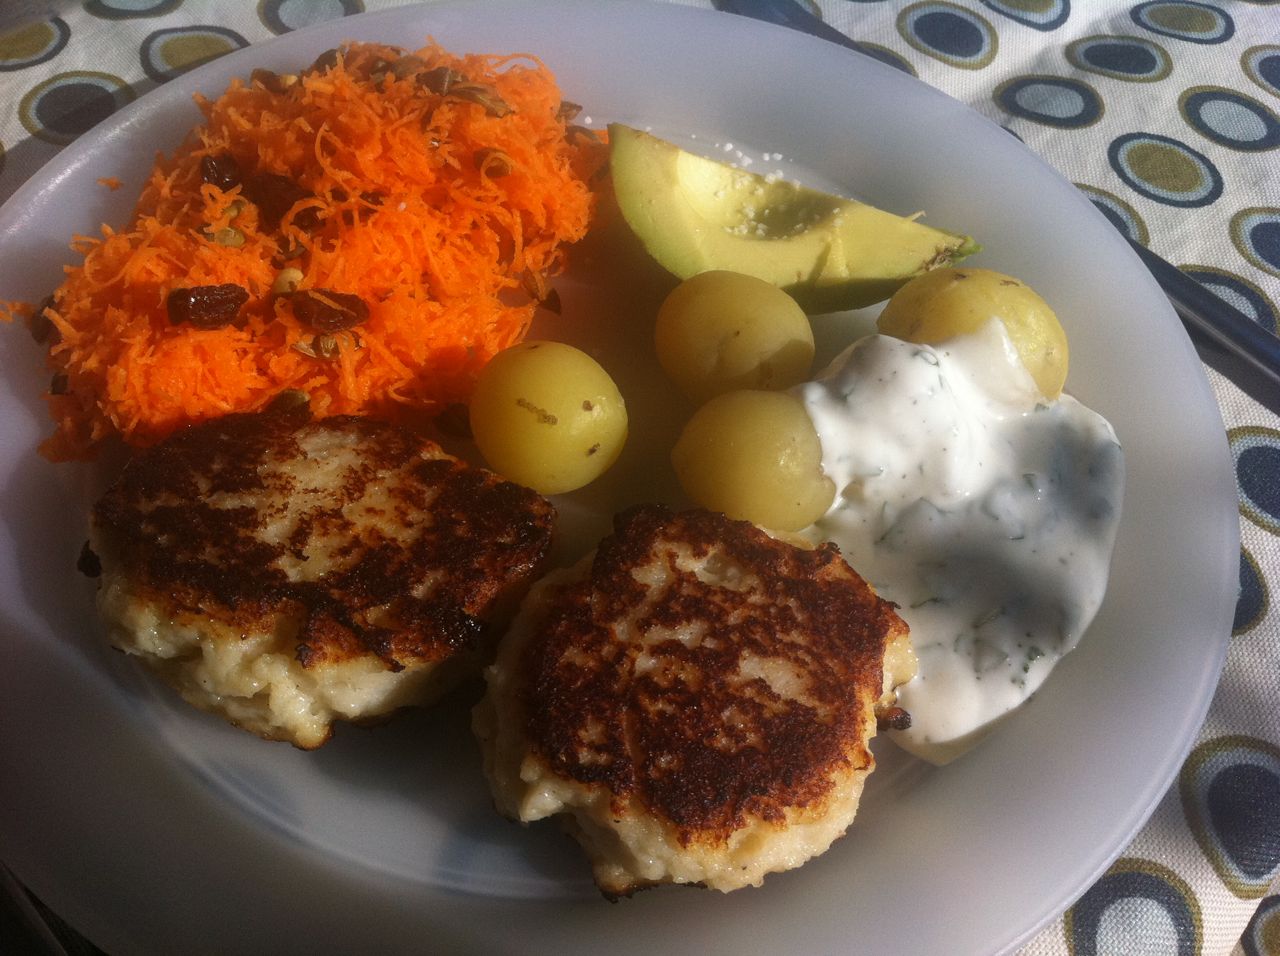 Grove fiskefrikadeller med nye kartofler, gulerodssalat med rosiner og græskarkerner + kold dip med basilikum